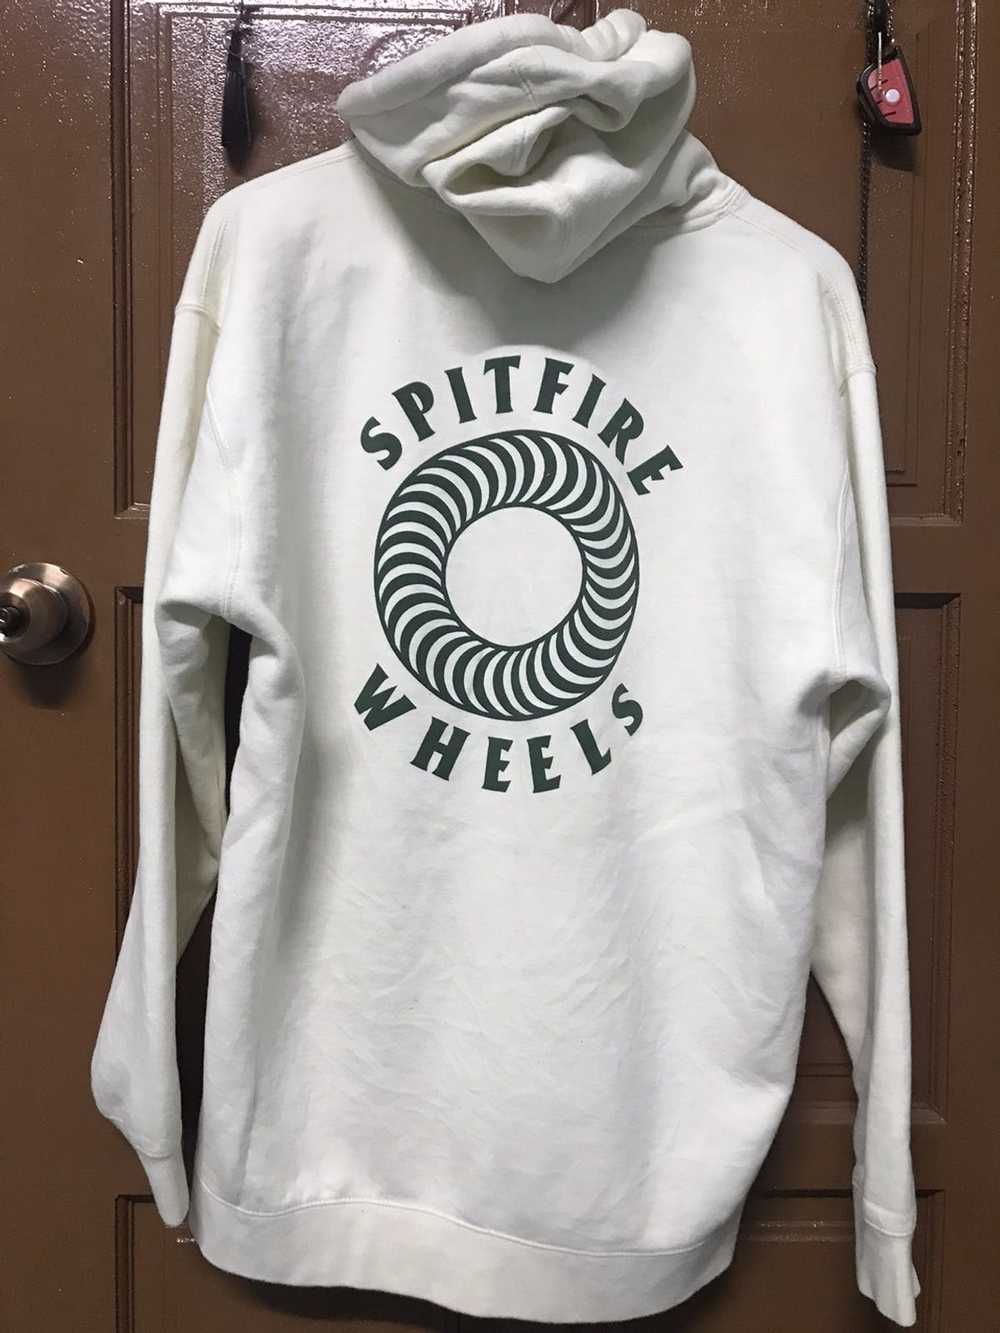 Japanese Brand Spitfire wheels sweatshirt hoodie - image 2